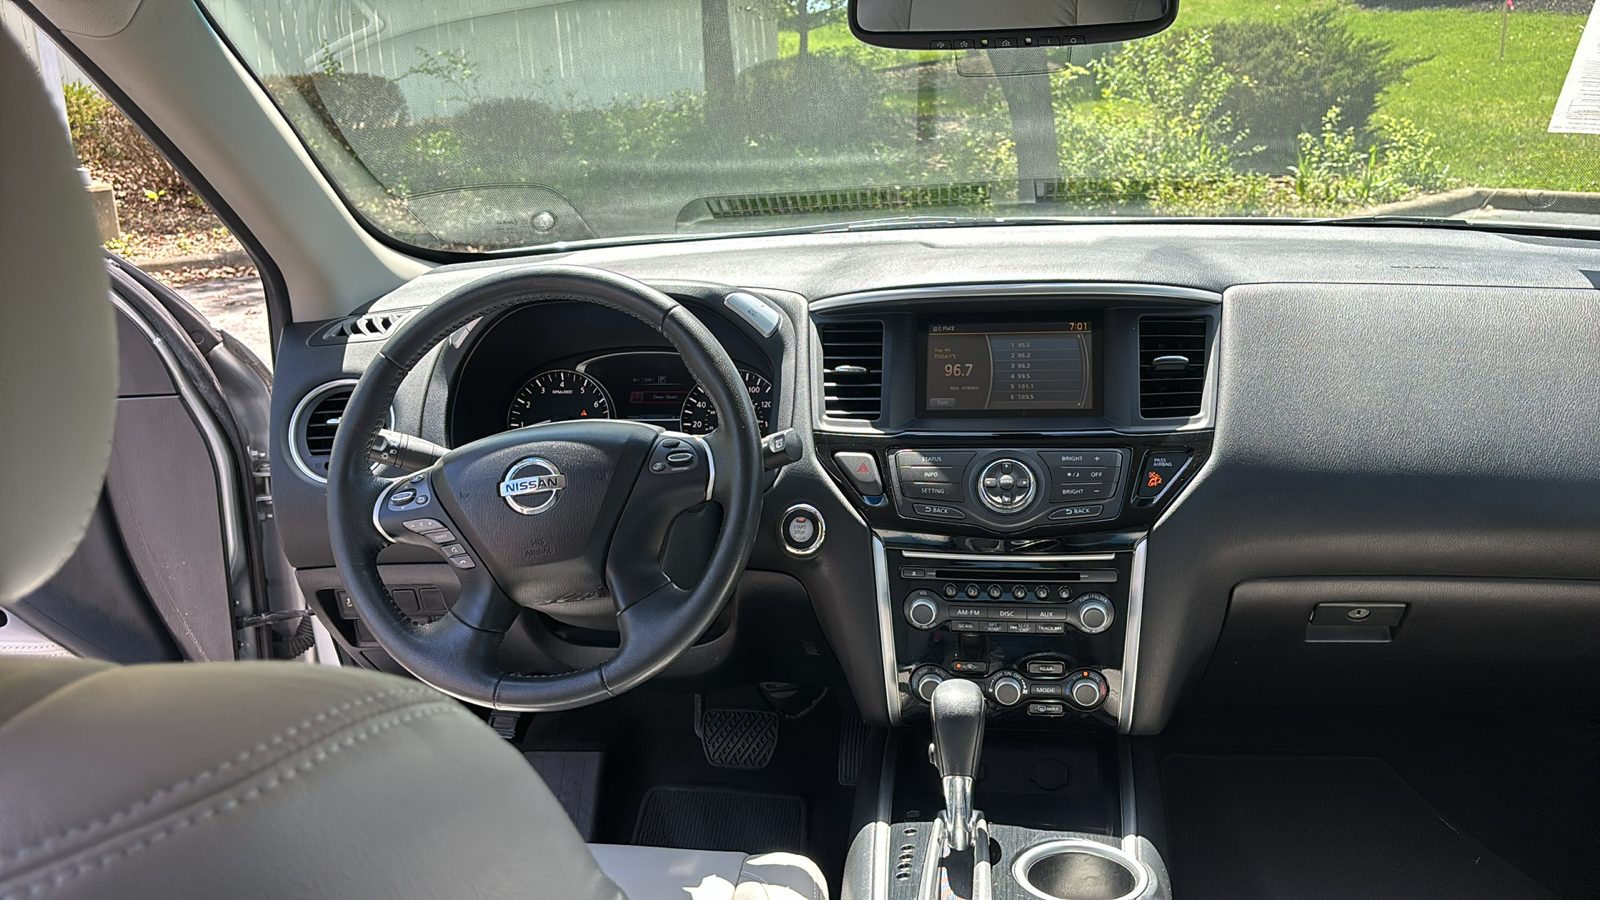 2016 Nissan Pathfinder SL 15